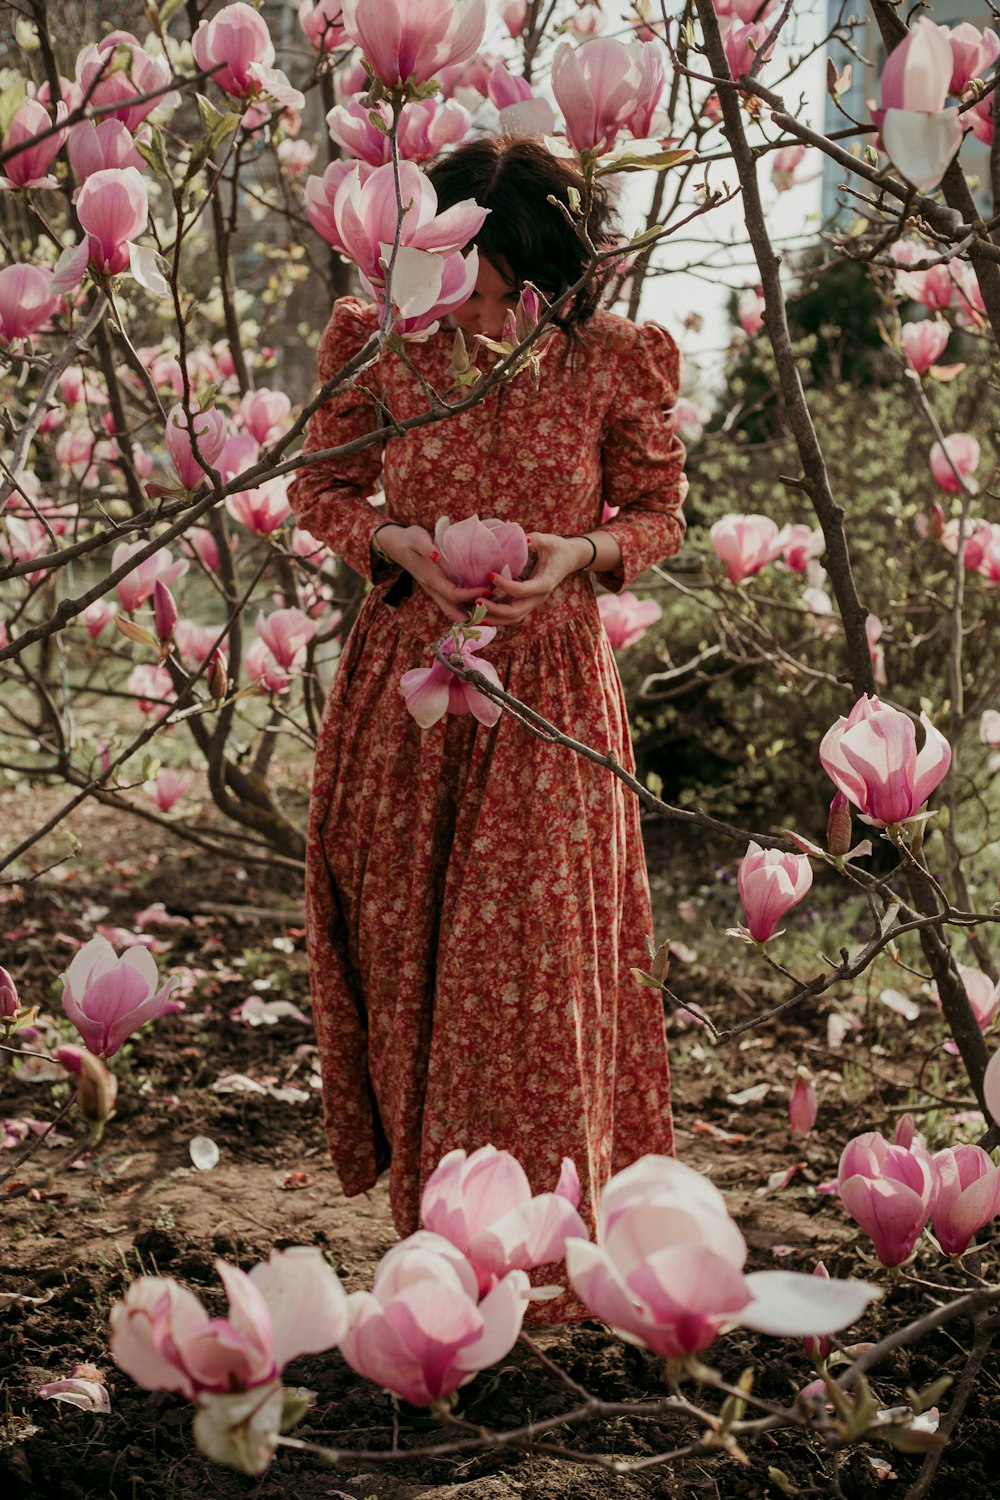 빨간 드레스를 입은 여자가 분홍색 꽃 근처에 서 있습니다.